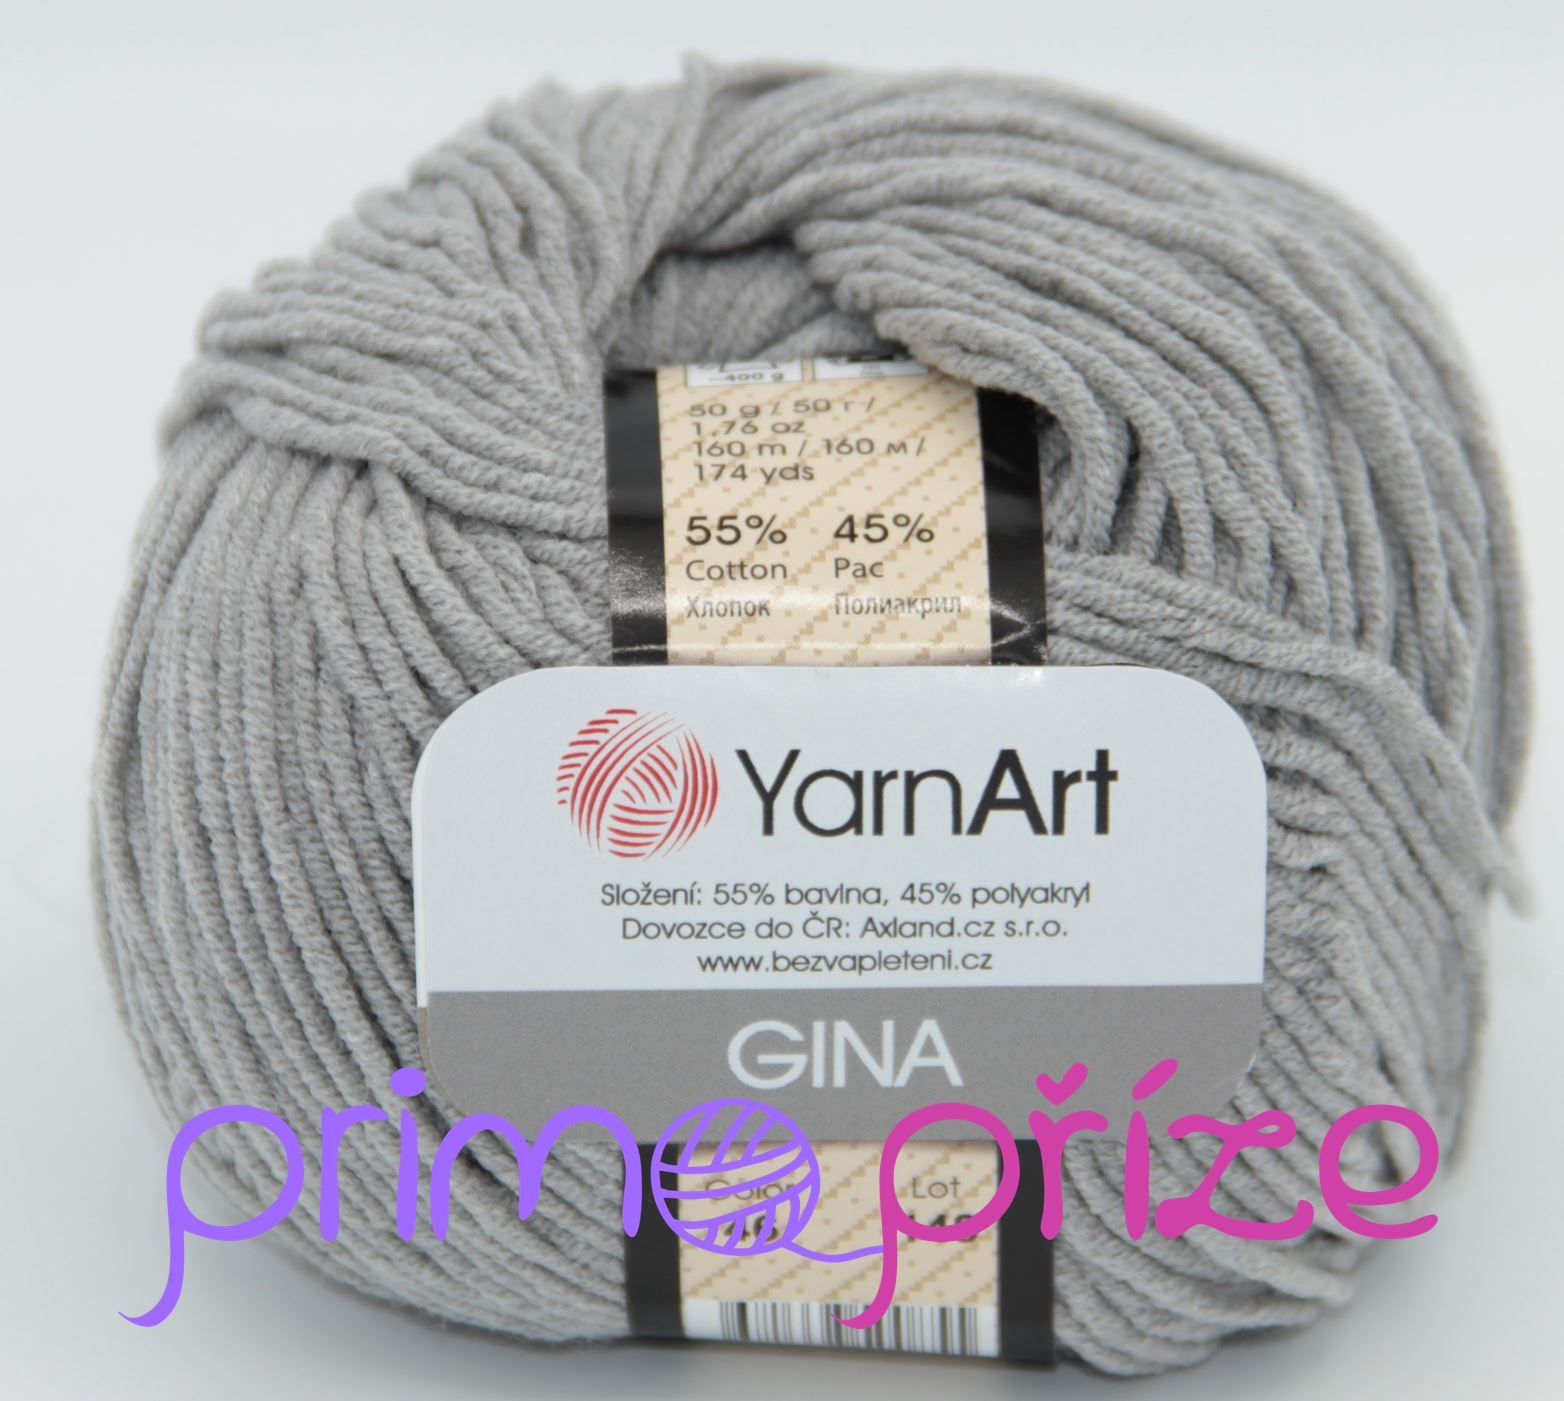 YarnArt Jeans/Gina 46 šedá